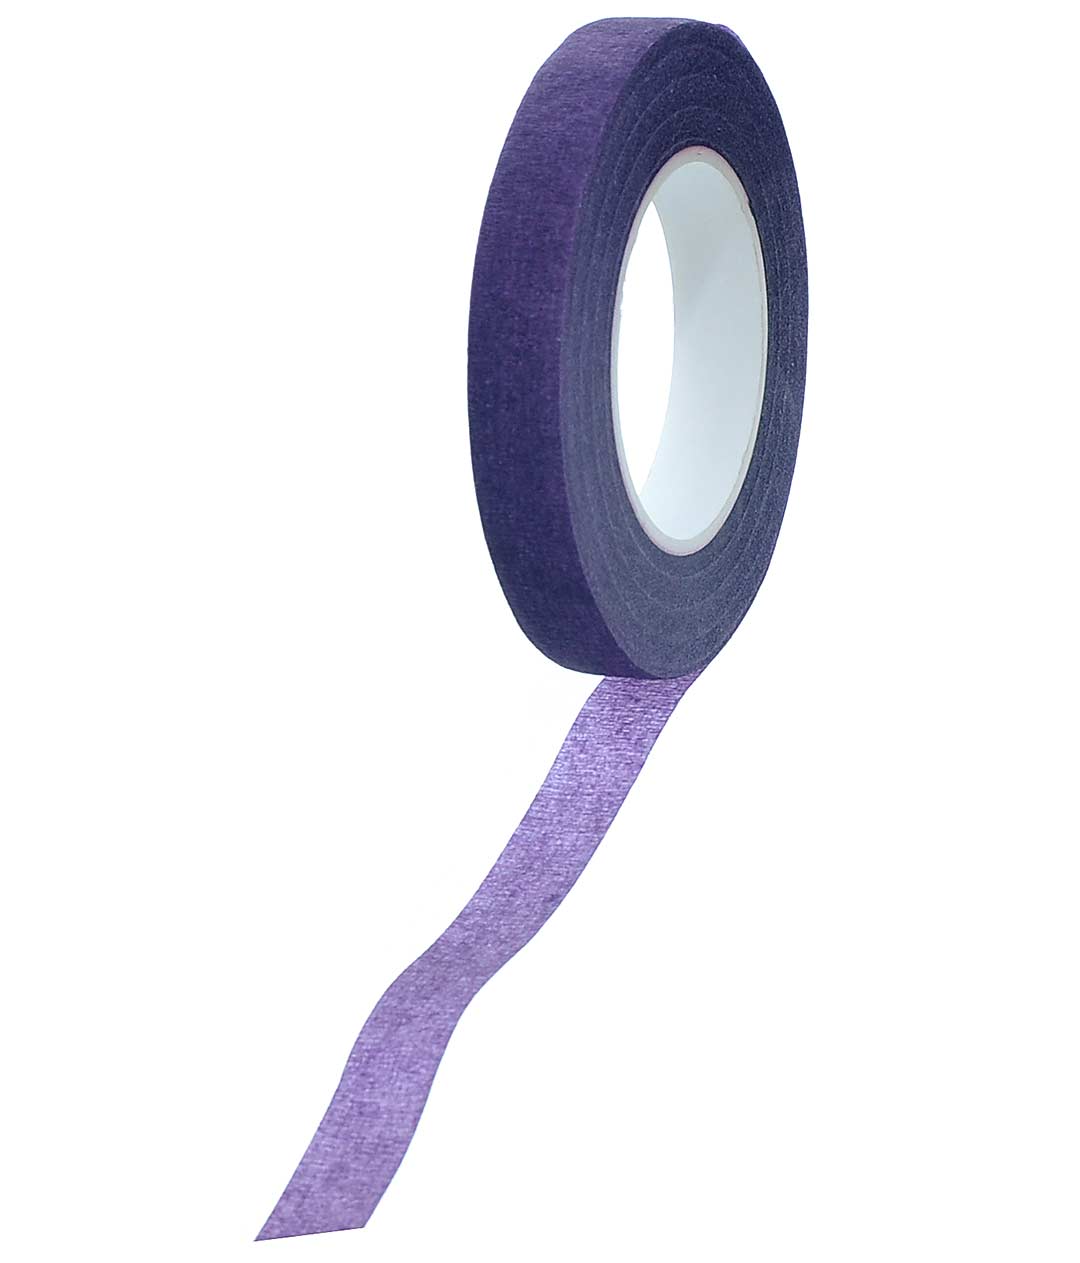 Изображение Тейп-лента фиолетовая